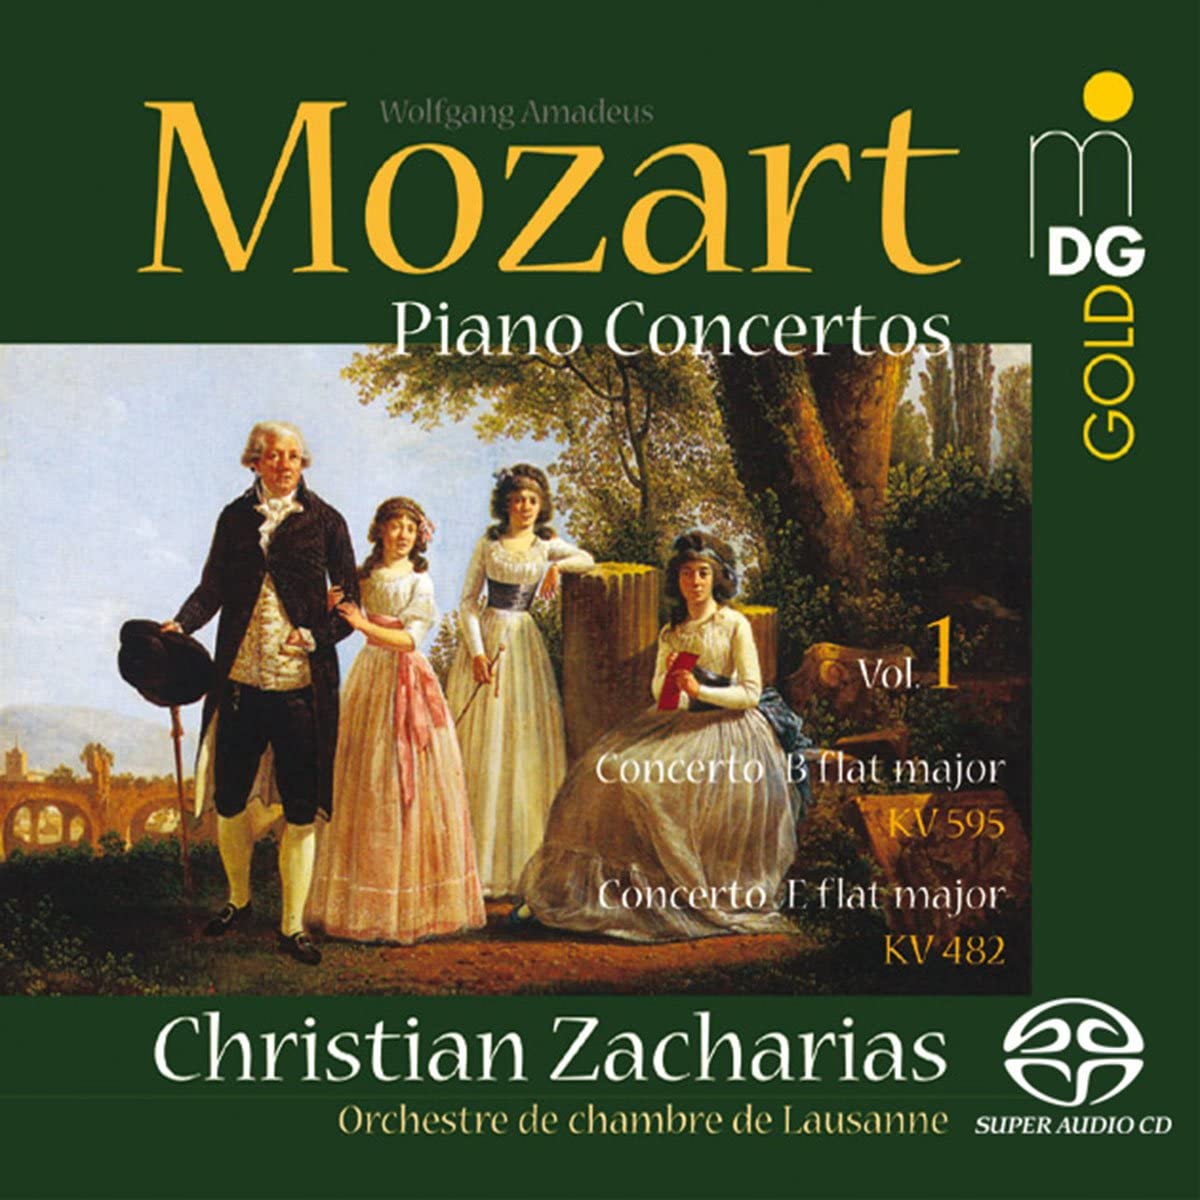 Mozart: Piano concertos vol. 1